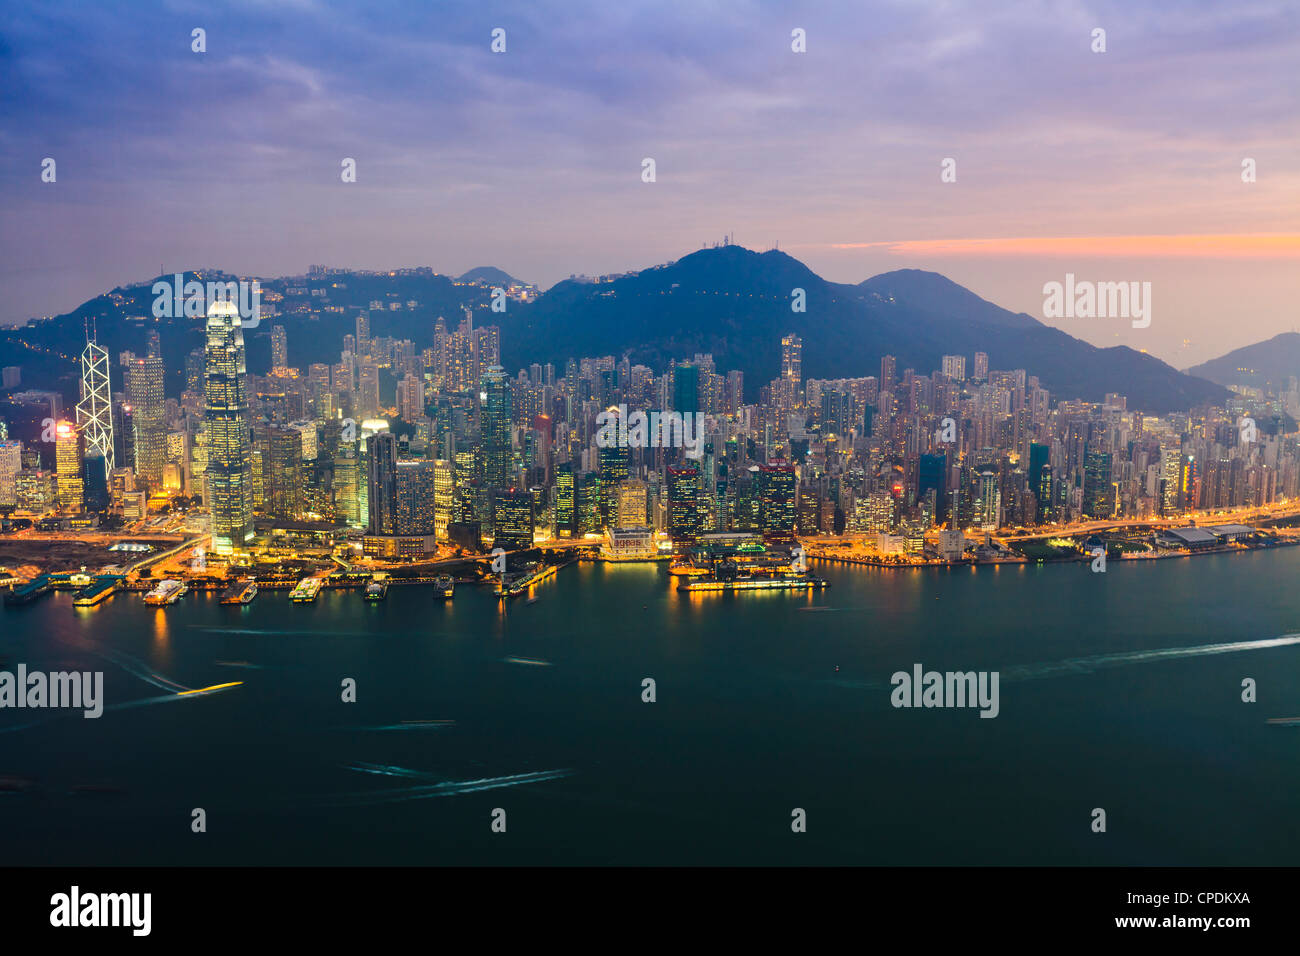 Cityscape of Hong Kong Island skyline at sunset, Hong Kong, China, Asia Stock Photo